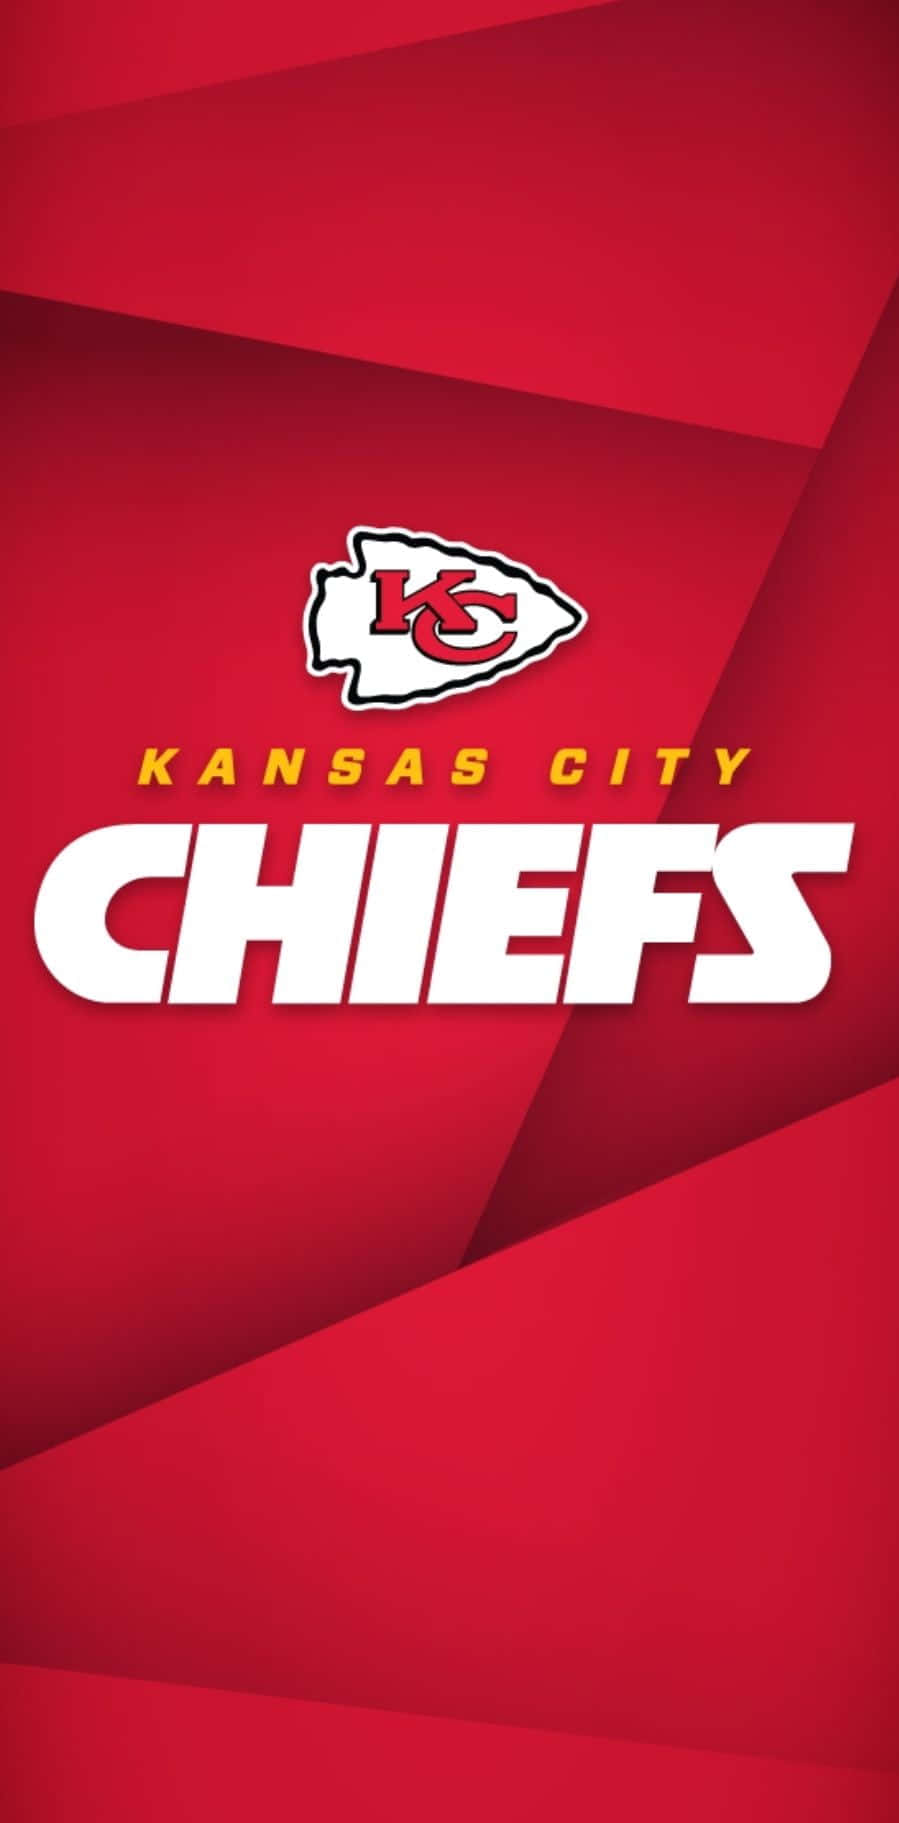 Logotipode Los Kansas City Chiefs Sobre Un Fondo Rojo Fondo de pantalla